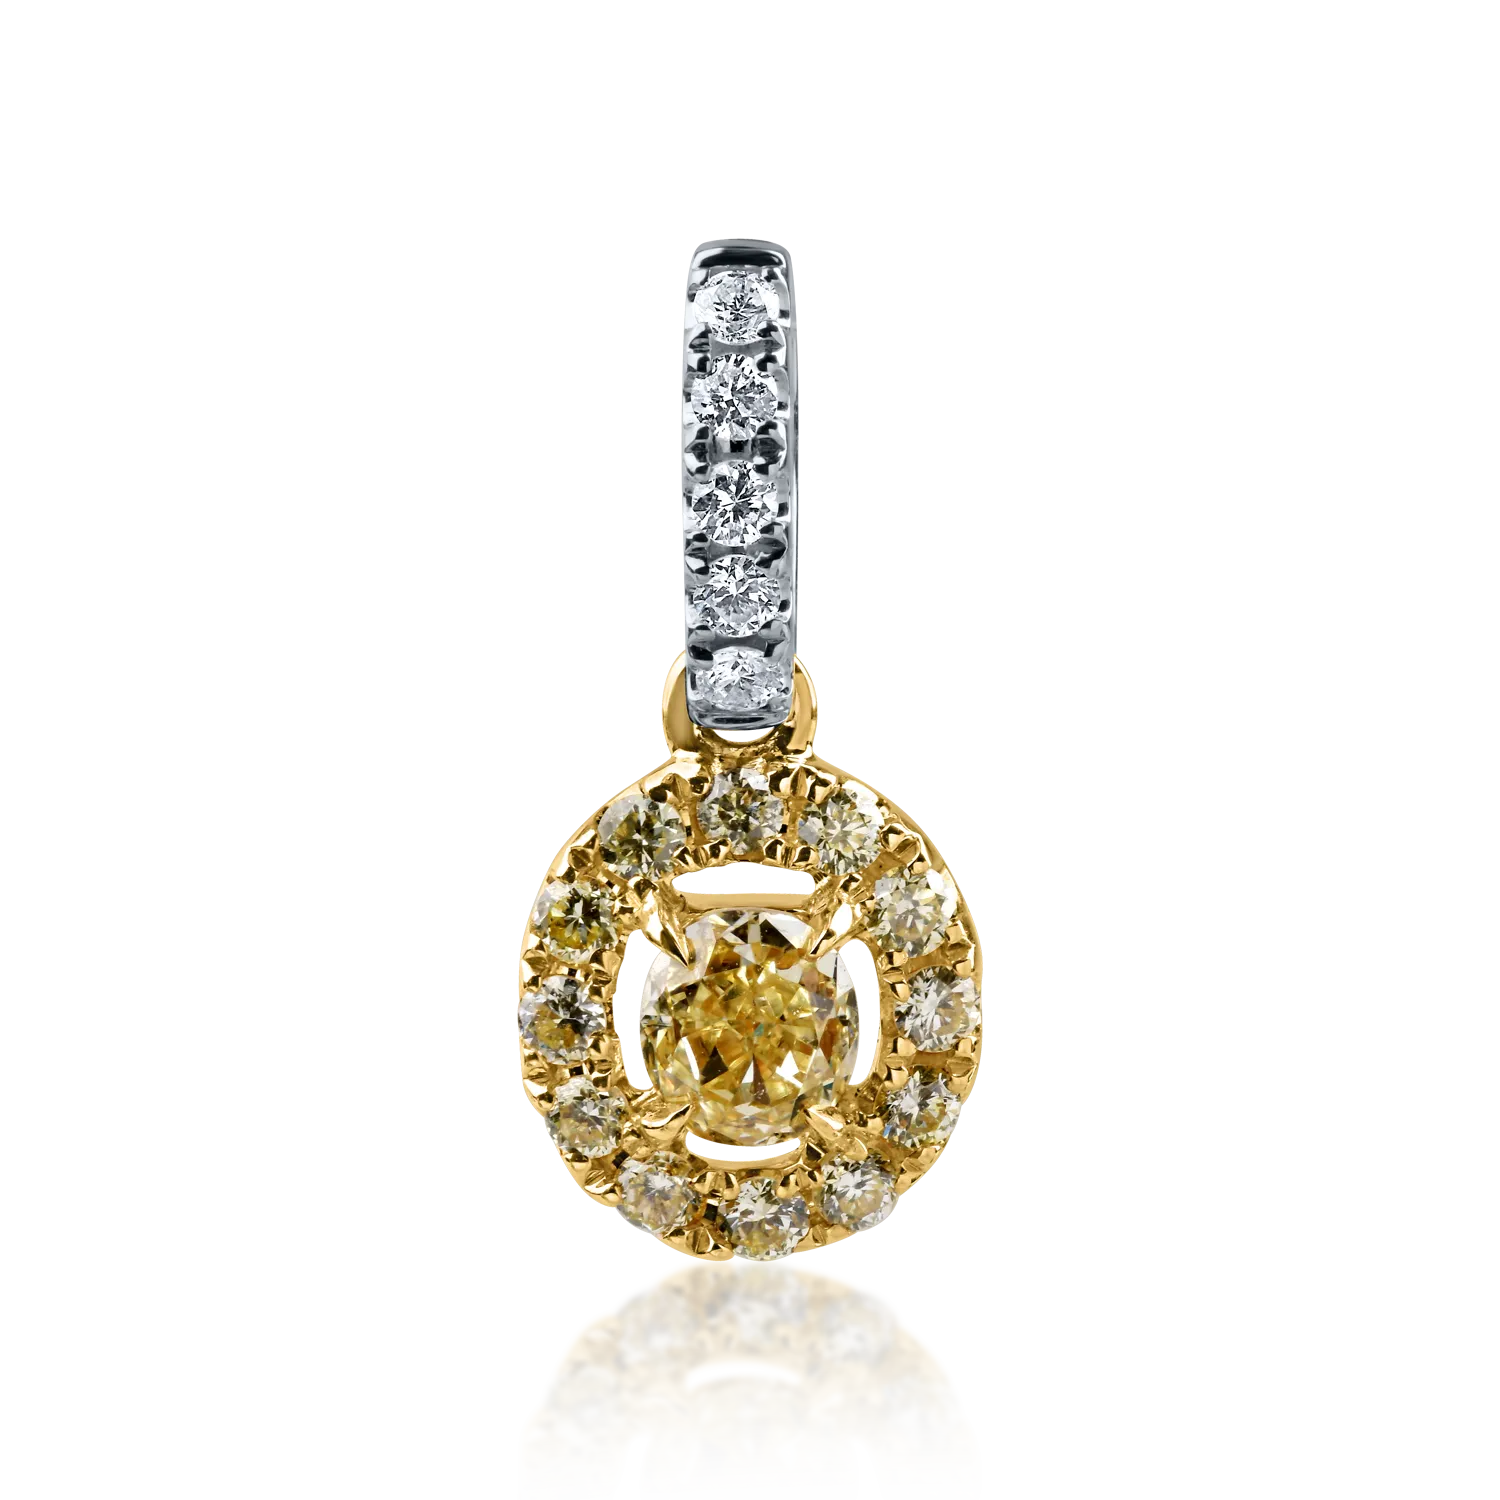 Wisiorek z żółto-białego złota z żółtym diamentem fantazyjnym o masie 0.148ct i diamentami o masie 0.108ct